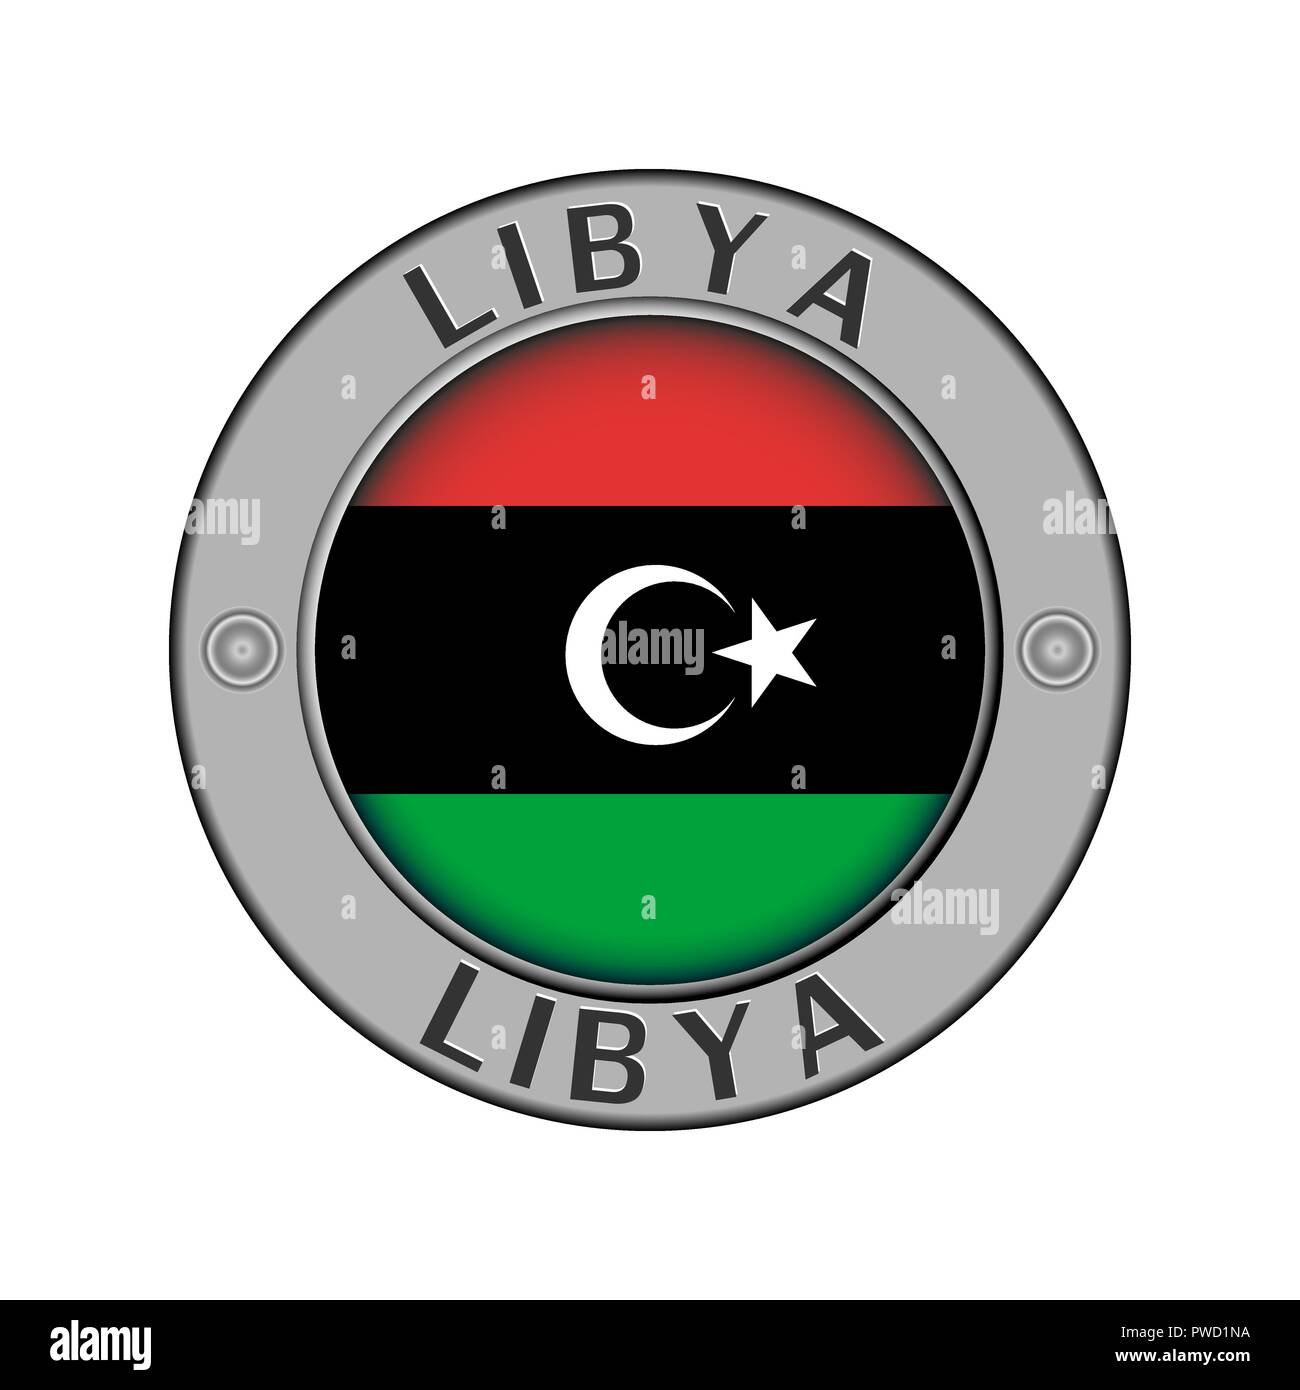 Rotondo di metallo medaglione con il nome del paese di Libia e un indicatore rotondo nel centro Illustrazione Vettoriale